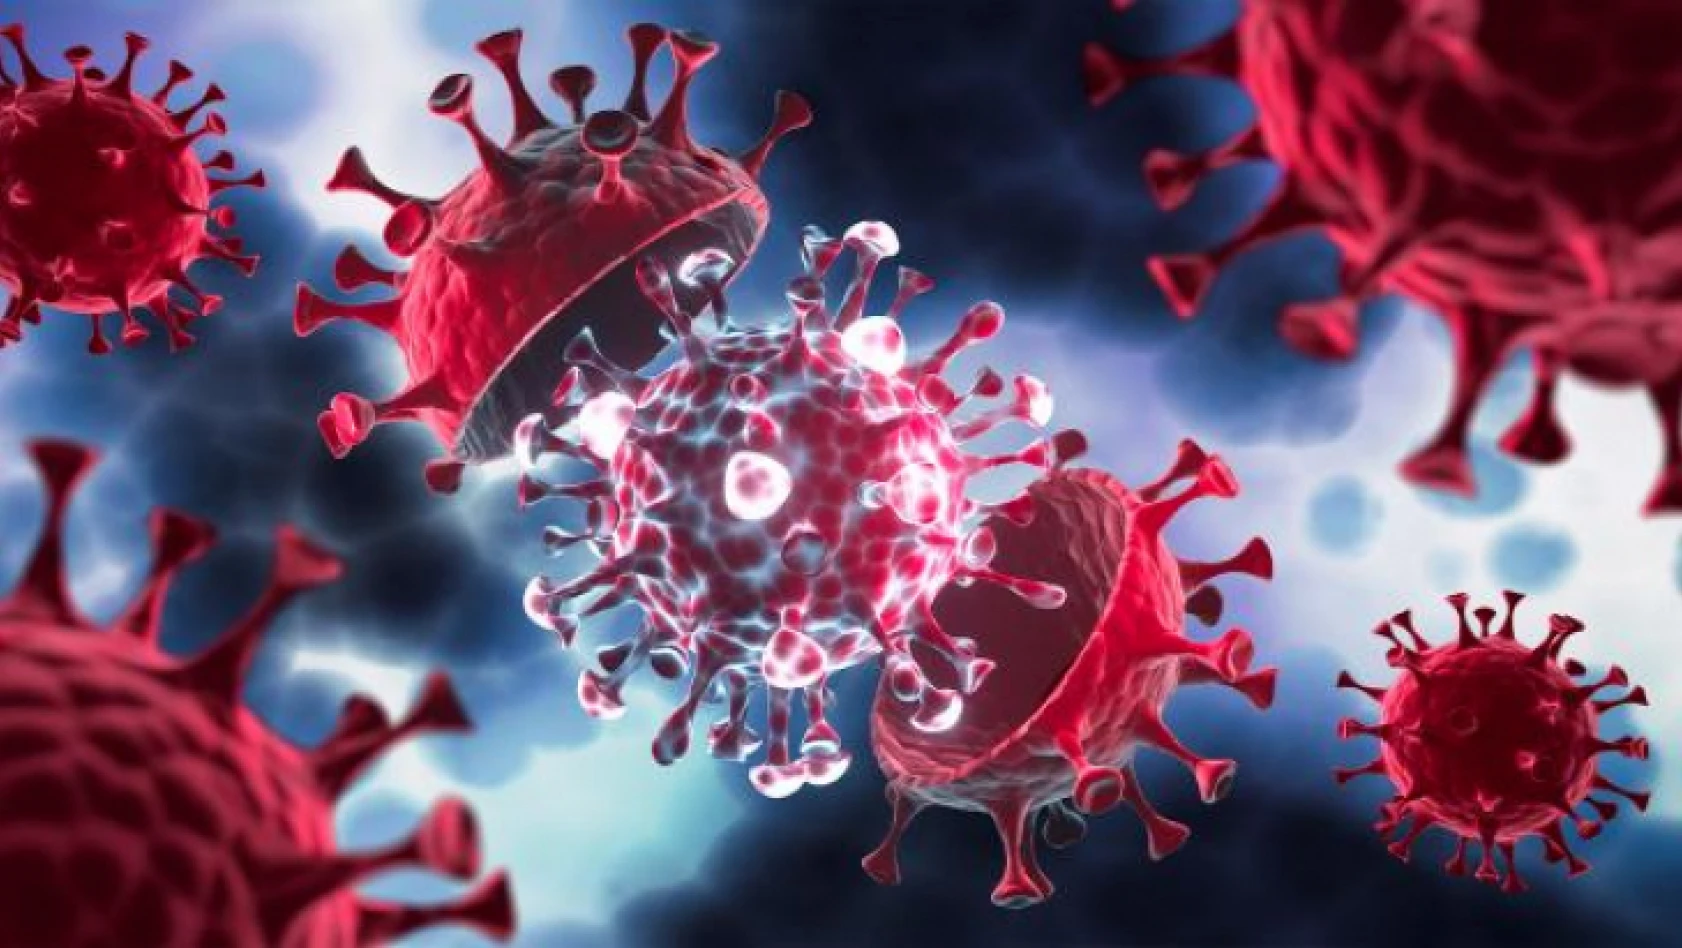 DSÖ'den endişe verici uyarı! Yeni koronavirüs varyantı ortaya çıkabilir!